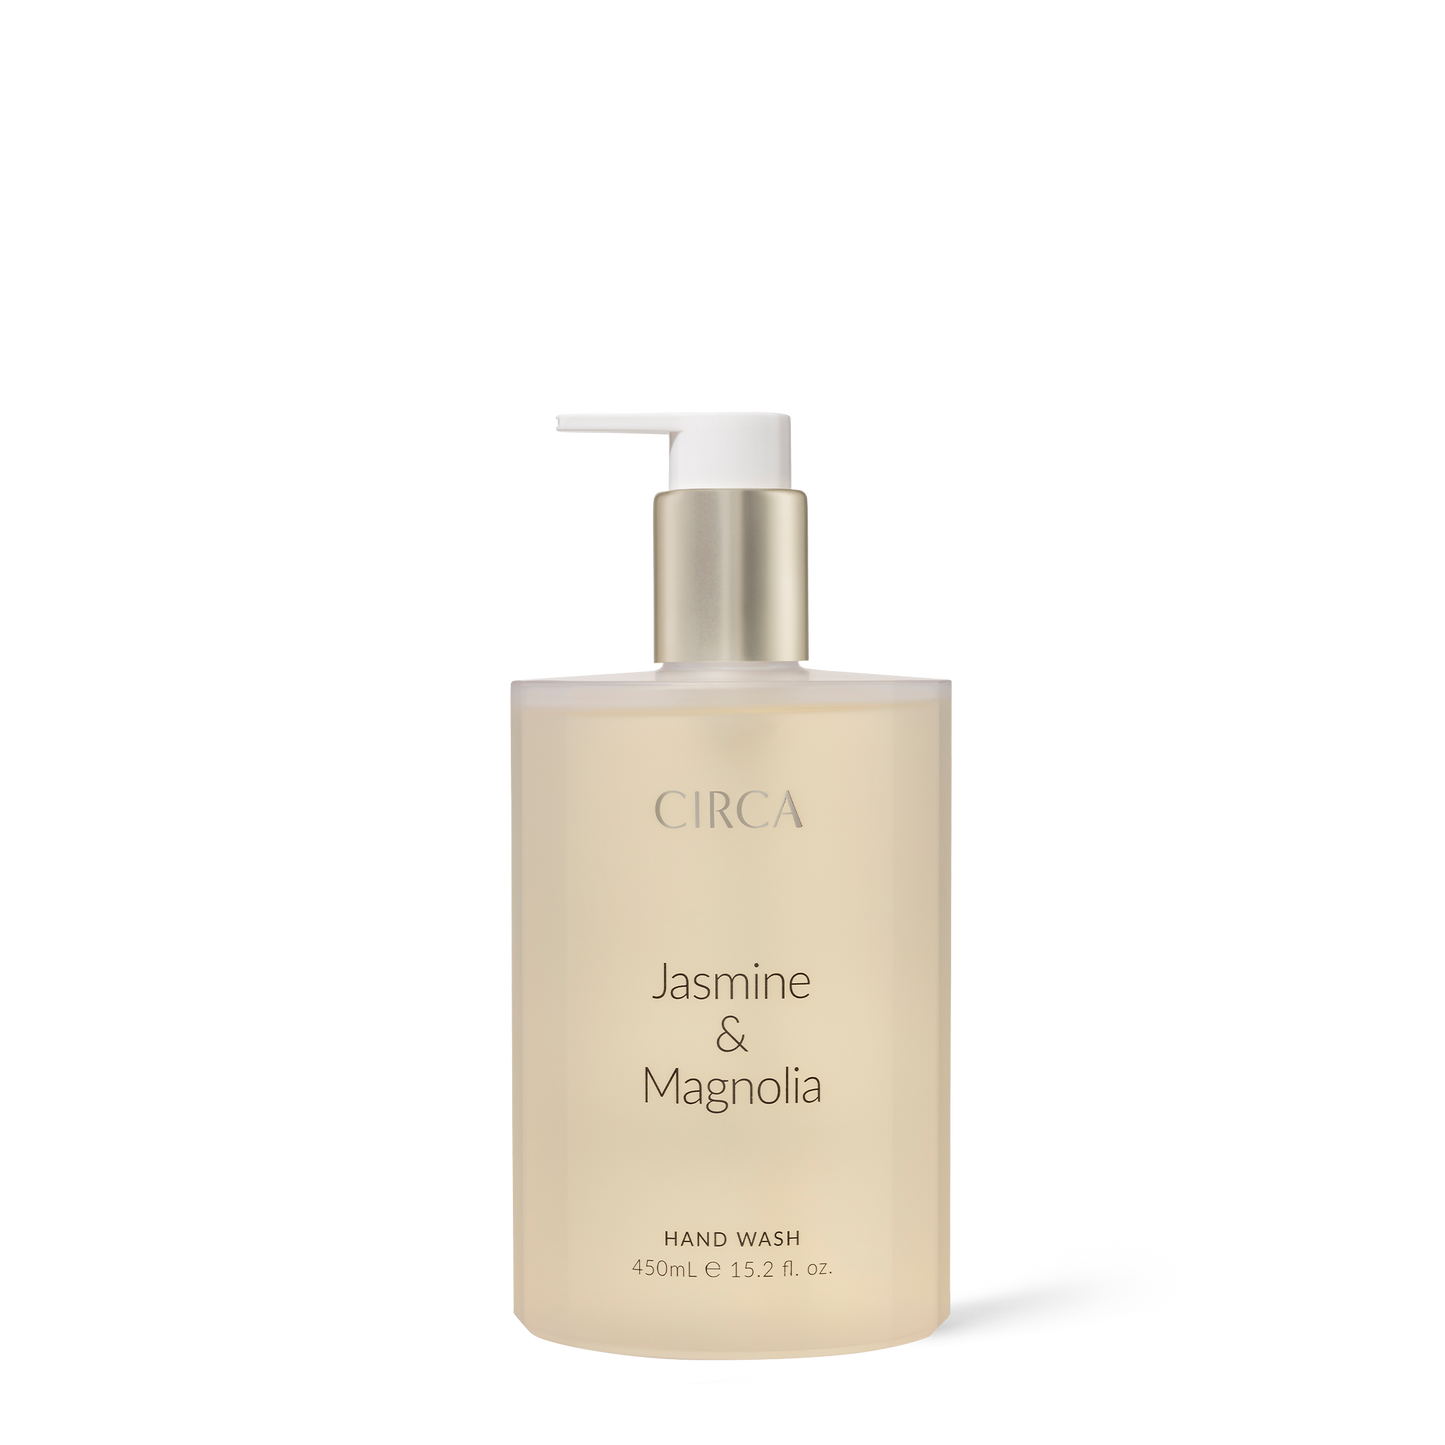 Jasmine & Magnolia Hand Wash 450ml - CIRCA